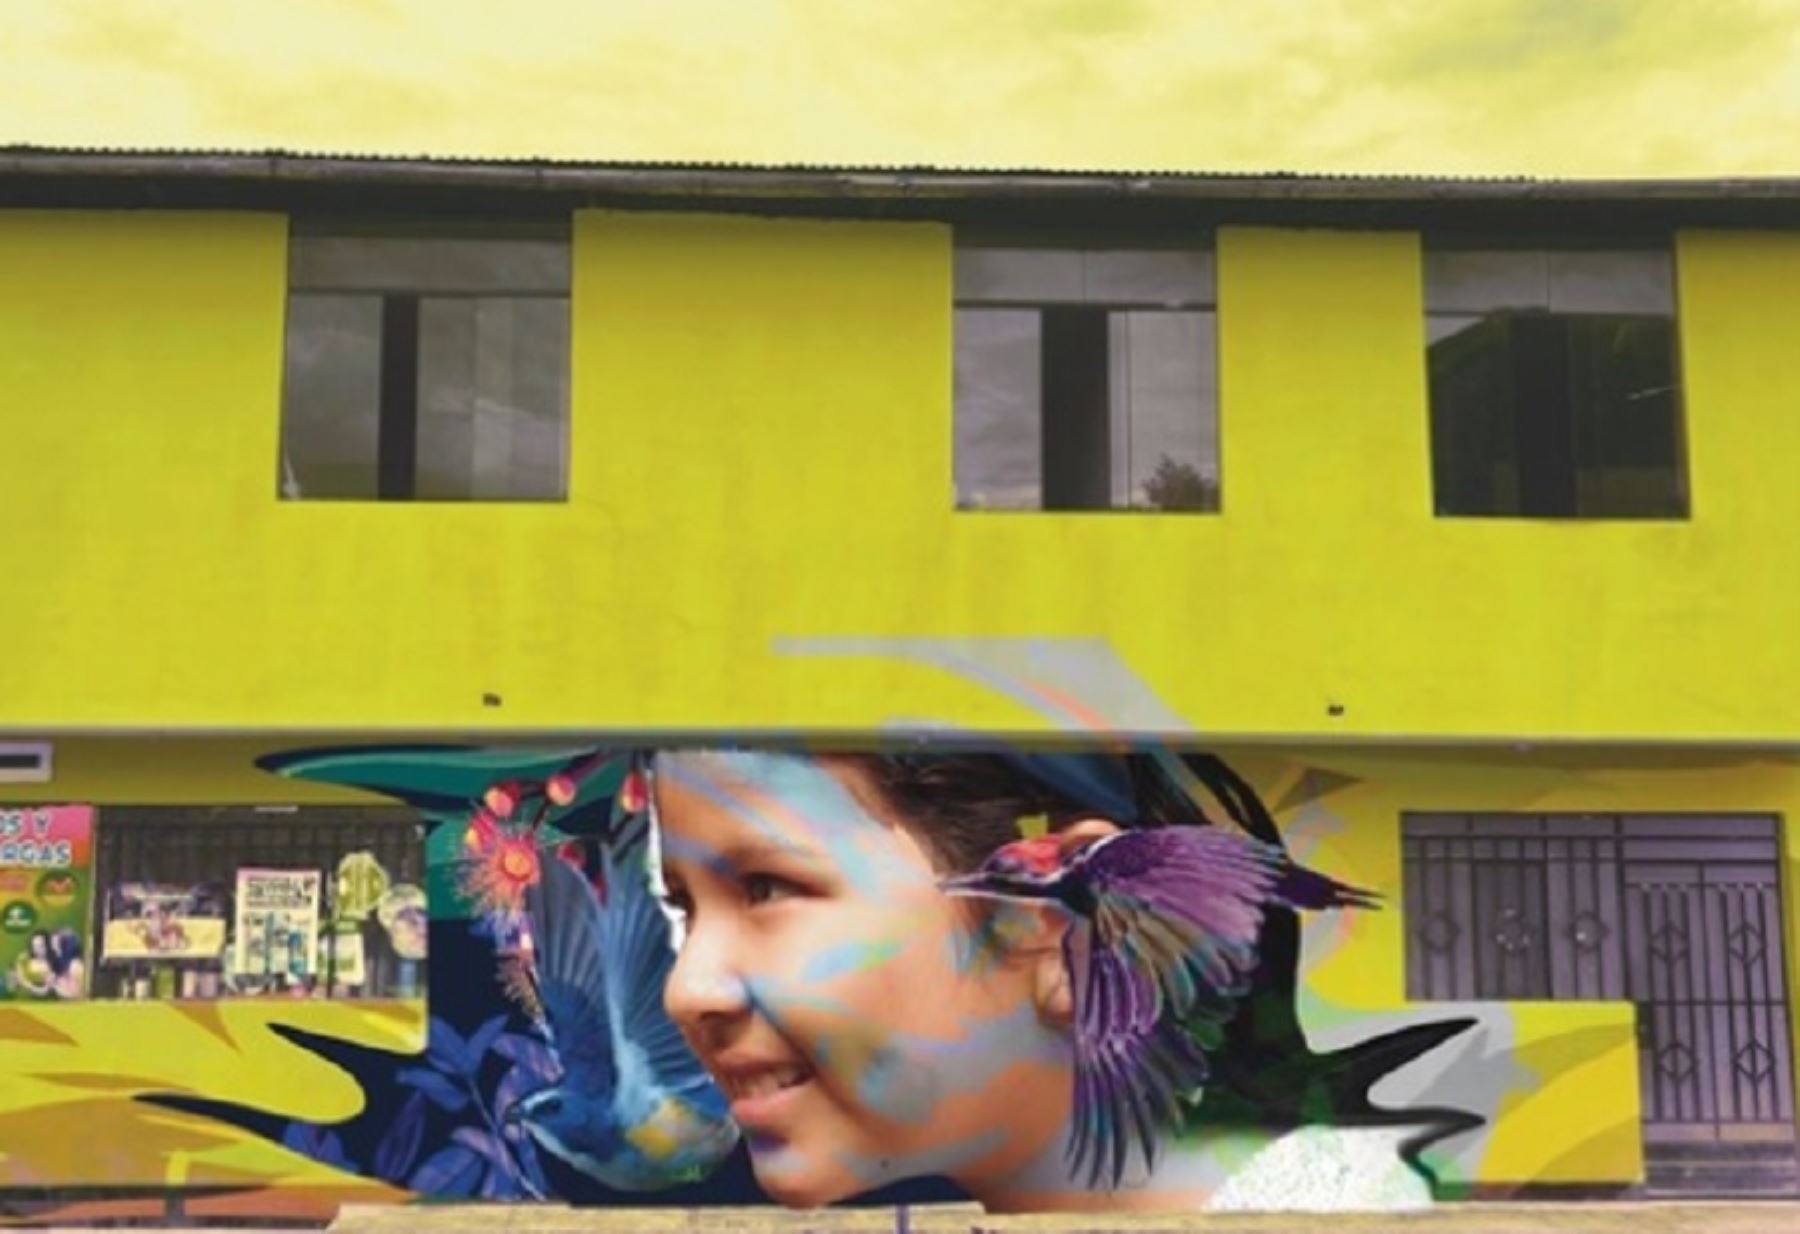 Este es un esfuerzo conjunto, realizado entre el Ministerio de Cultura, Unesco Perú,  la marca Inca Kola y la comunidad, que permitirá que el Barrio de Zaragoza se inserte en el circuito de murales que caracteriza a la ciudad de Moyobamba, promoviendo la diversidad e inclusión; al mismo tiempo que se pone en valor el trabajo de 8 jóvenes artistas locales.